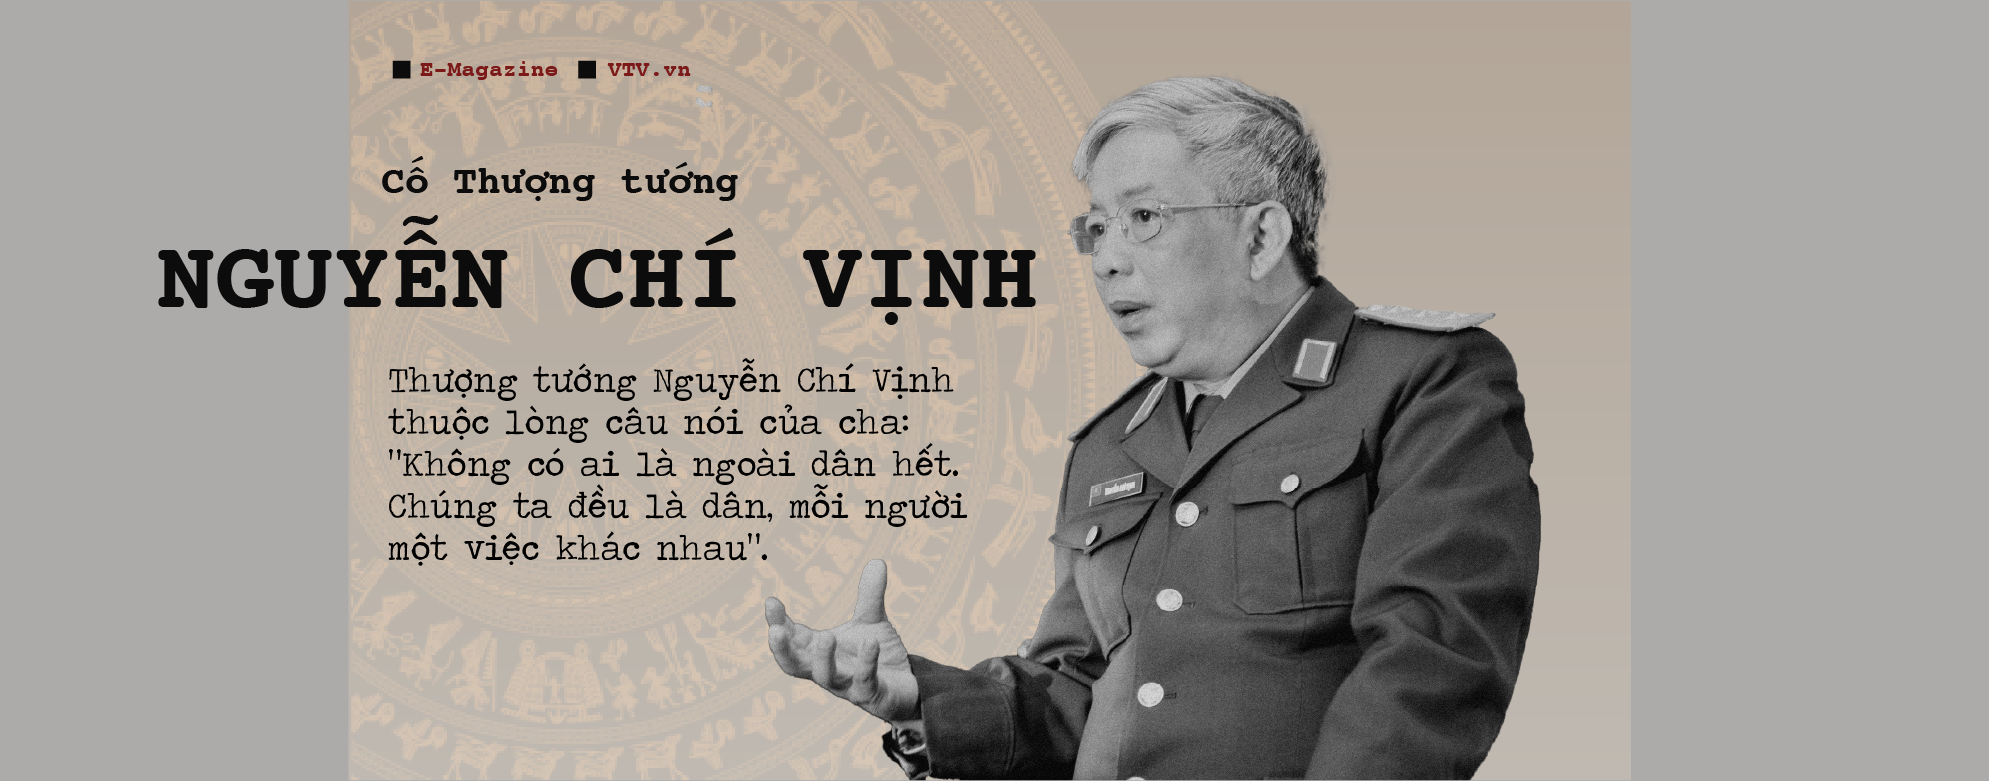 Thượng tướng Nguyễn Chí Vịnh: Từ cậu bé binh bét của cha đến nhà ngoại giao Quốc phòng - Ảnh 7.